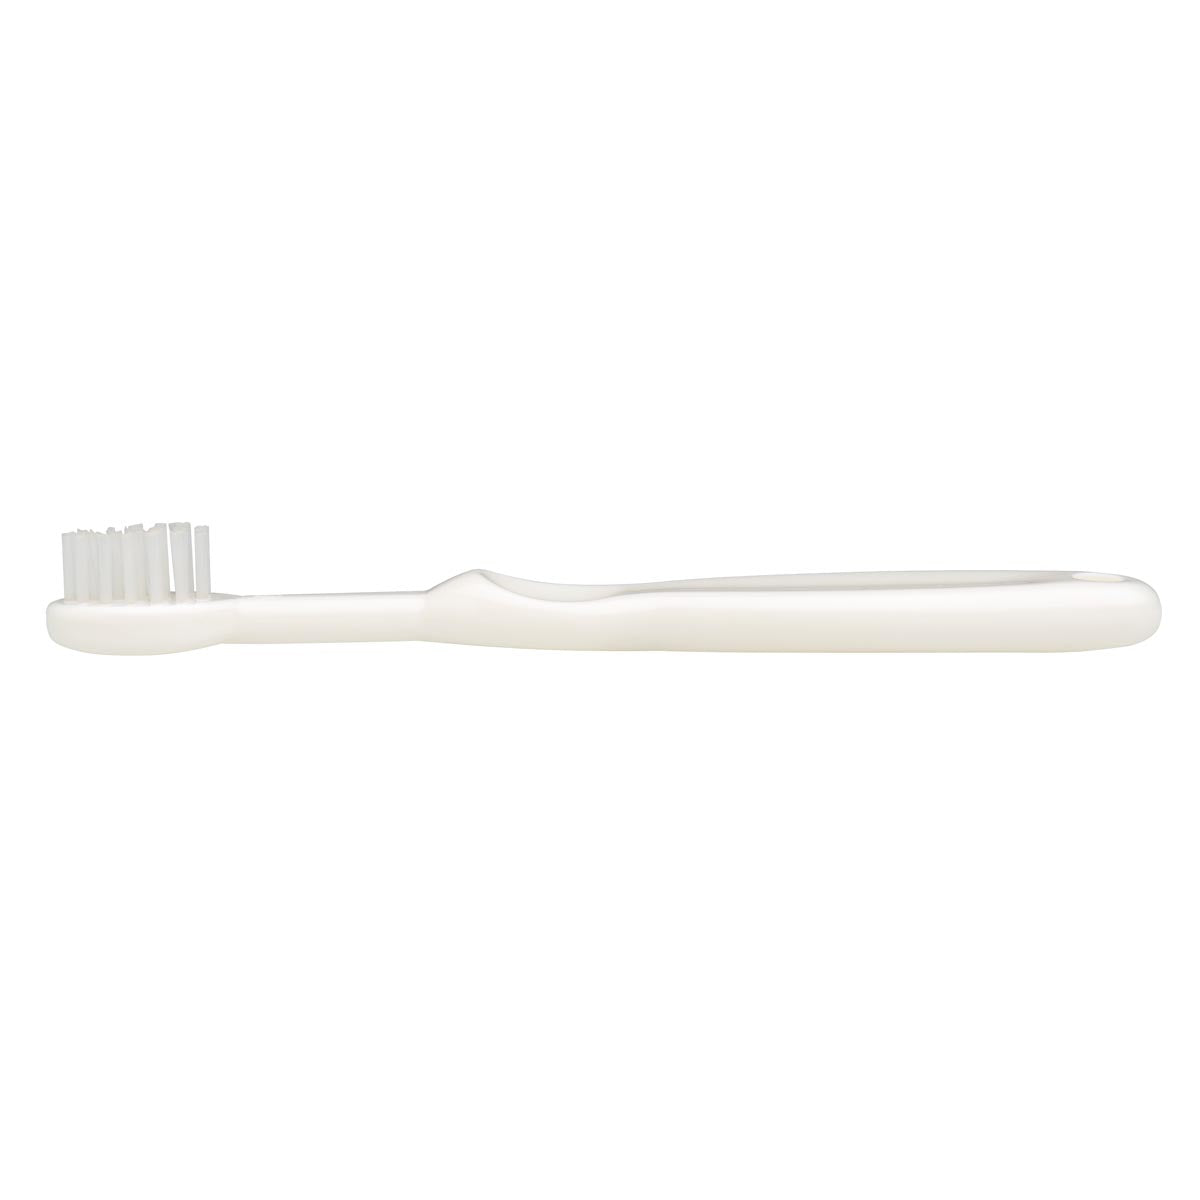 Mininor Baby Toothbrush Set